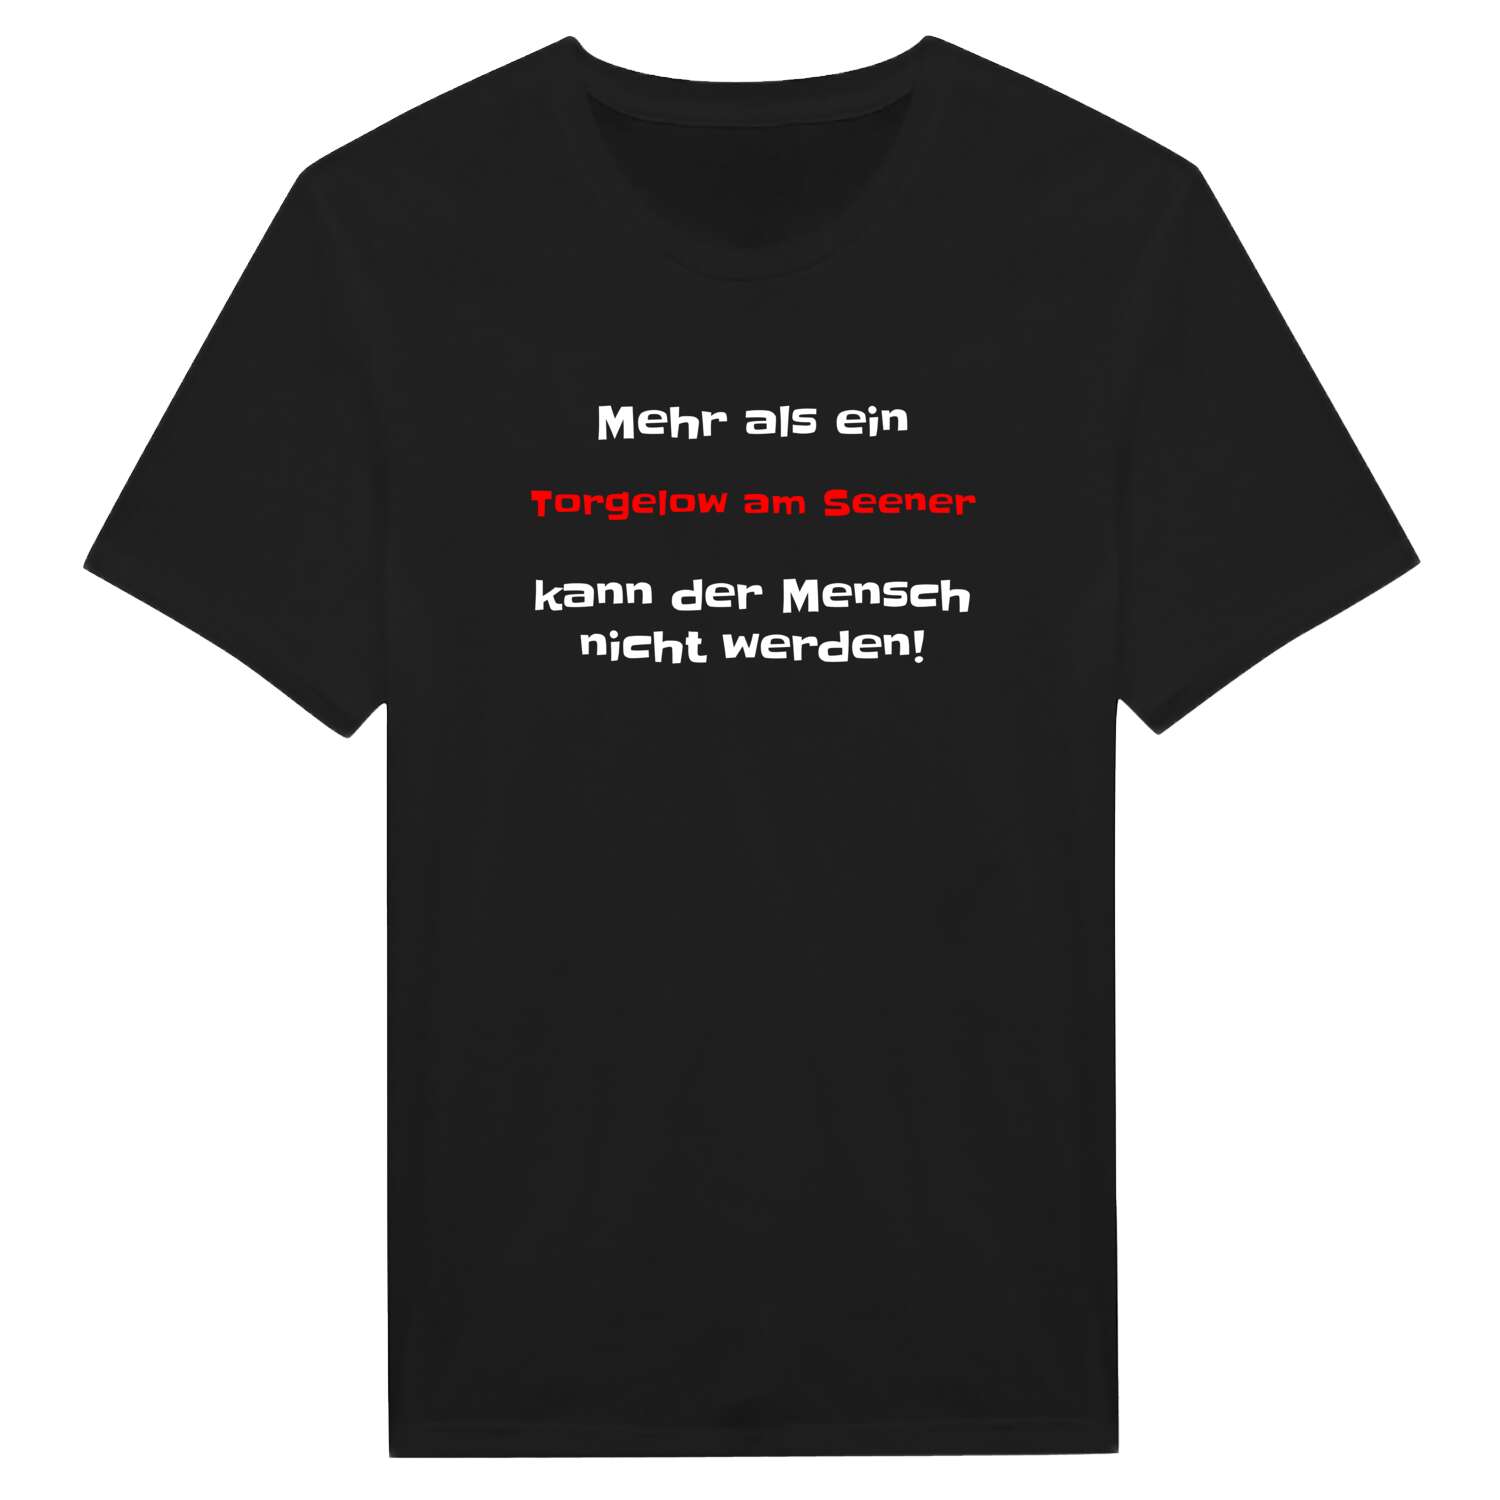 Torgelow am See T-Shirt »Mehr als ein«